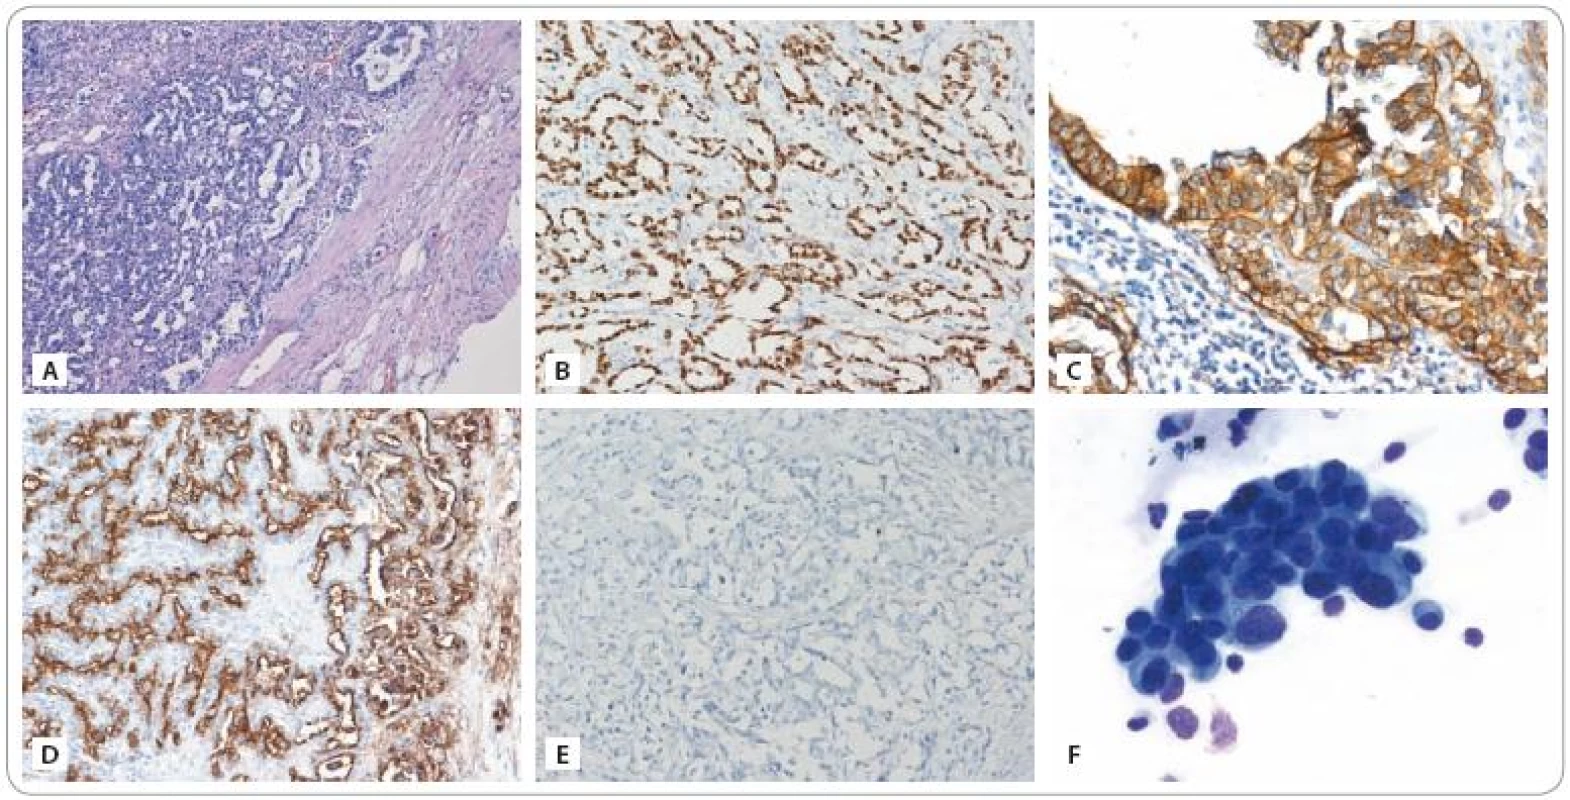 A) Infiltrace lymfatické uzliny metastázou adenokarcinomu plicního origa odpovídající nemucinóznímu bronchioloalveolárnímu karcinomu (dle podrobného imunoprofilu – viz text). Barvení hematoxylin – eozin. Zvětšeno 100×. B) Imunohistochemické vyšetření exprese TTF-1 (thyroid transcription factor-1, specifi cký marker pro adenokarcinomy plicního origa): pozitivní průkaz. Zvětšeno 200×. C) Imunohistochemické vyšetření exprese EGFR: pozitivní průkaz silné membránové exprese. Zvětšeno 200×. D) Imunohistochemické vyšetření exprese antigenu CA 15-3: pozitivní průkaz. Zvětšeno 200×. U pacienta byl antigen CA 15-3 ve zvýšené koncentraci detekován rovněž v séru. E) Imunohistochemické vyšetření exprese antigenu CA 125: negativní průkaz. U pacienta byl antigen CA 125 ve zvýšené koncentraci detekován v séru. Nejspíše však pocházel z buněk mezotelu pleury, neboť nádorové buňky tento antigen neexprimovaly. F) Trs nádorových buněk získaných z cytospinu aspirátu bronchoalveolární laváže provedené v době progrese nemoci. Vyšetřením byla prokázána maligní bronchorrhea. Barvení MGG, zvětšeno 630×. (Fotografie a vyšetření provedli: MUDr. Pavel Fabian, Ph.D., MUDr. Eva Krejčí).